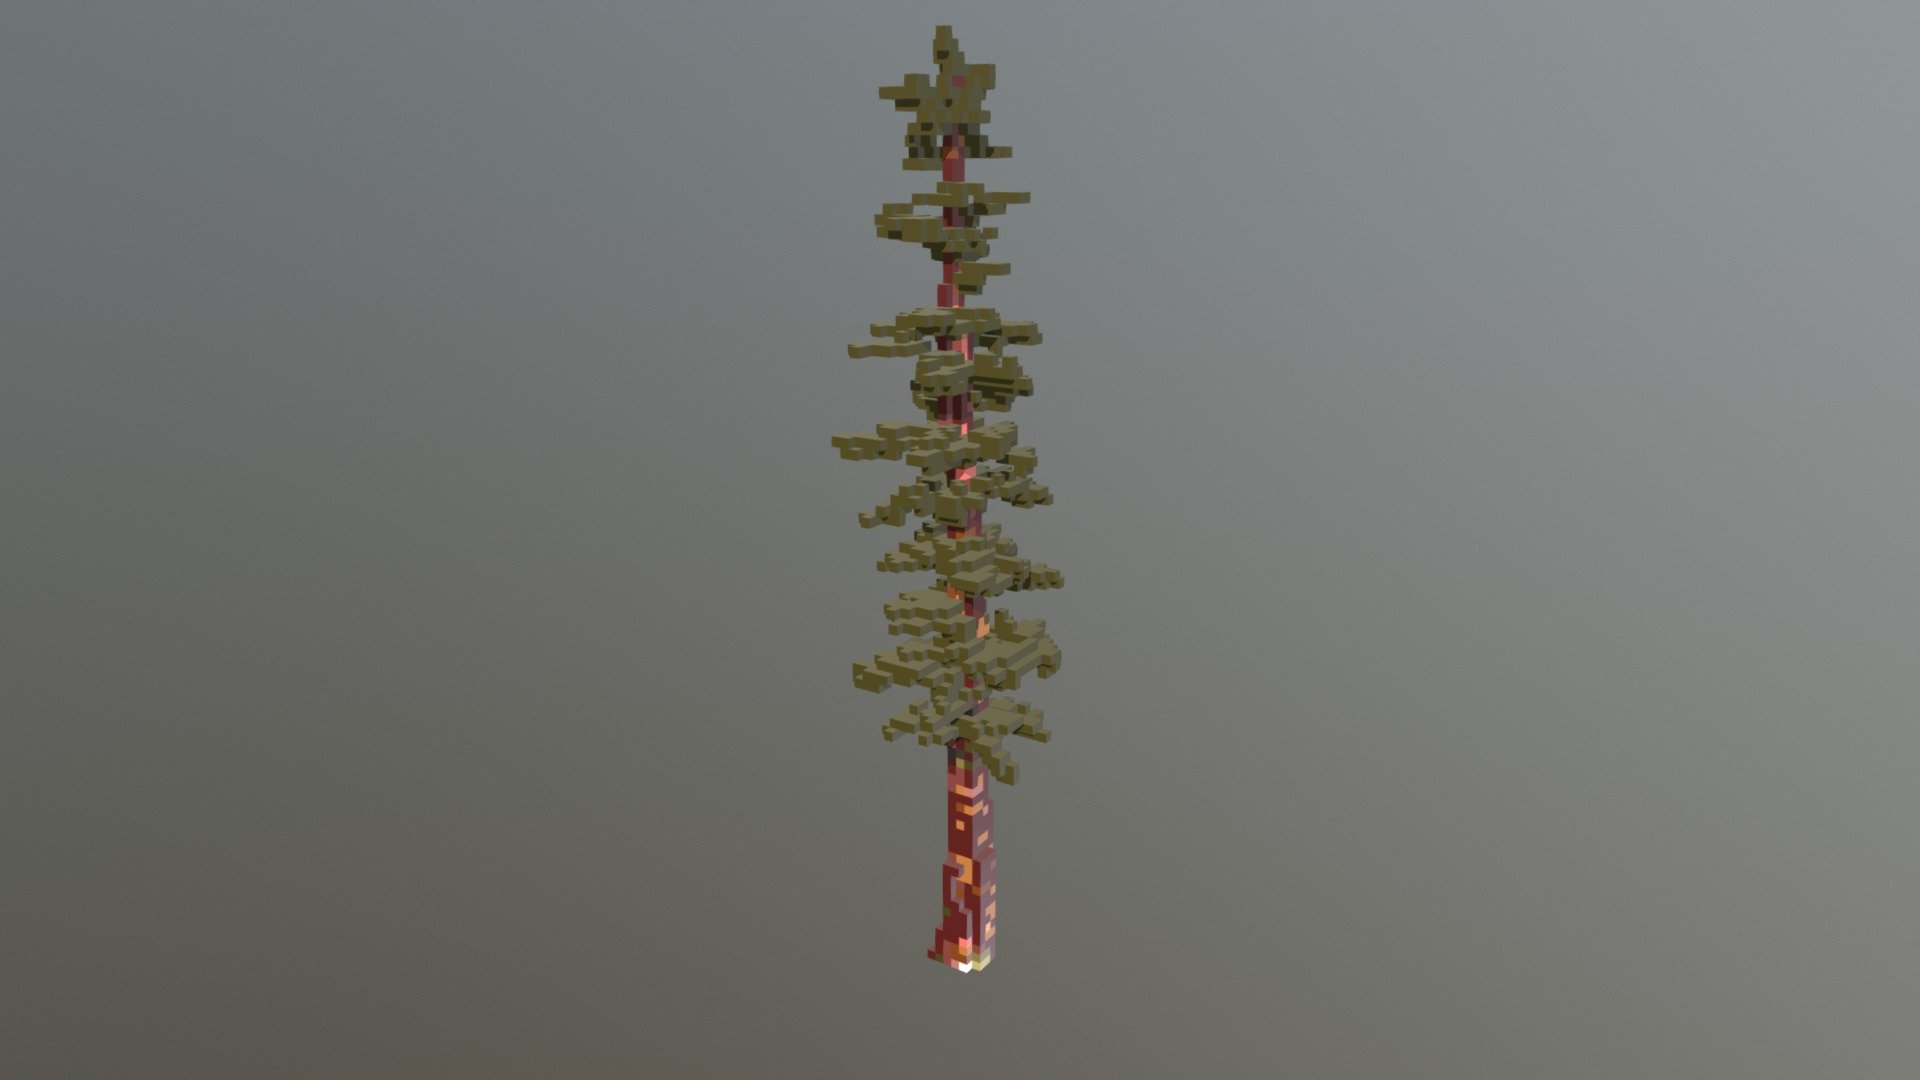 Sequoia Redwood Tree Voxel